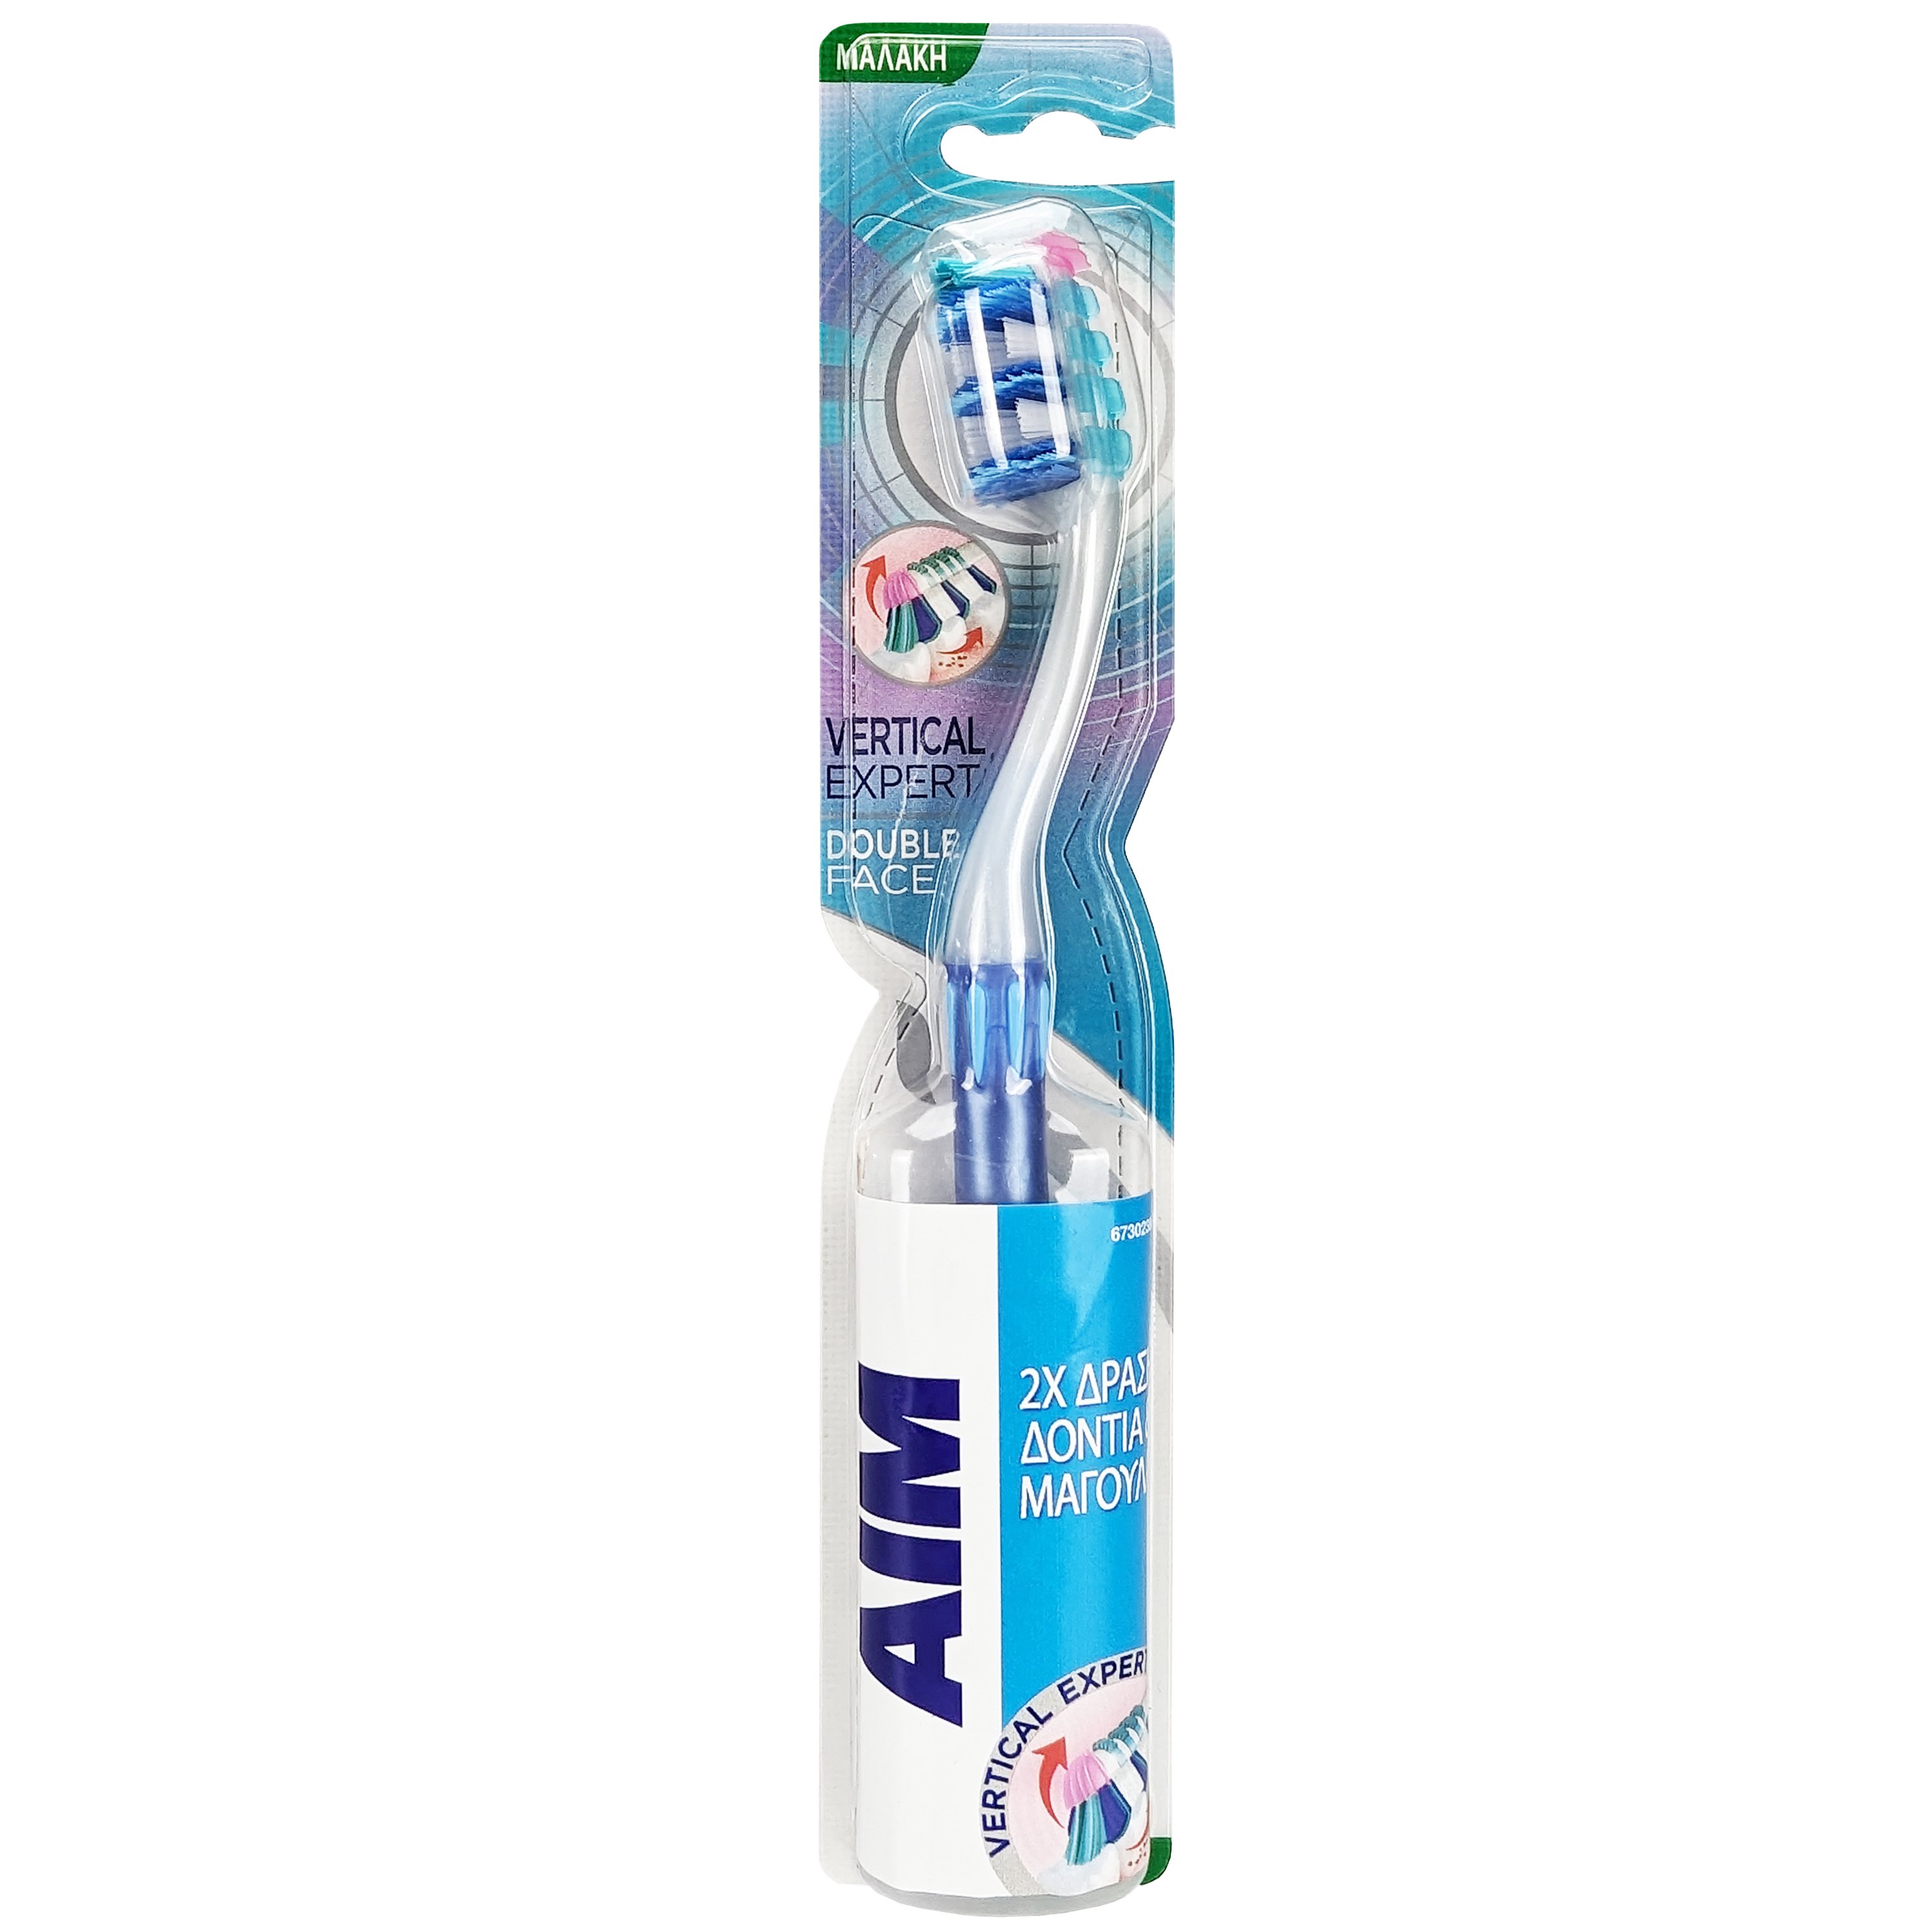 Aim Vertical Expert Double Face Soft Toothbrush Μαλακή Οδοντόβουρτσα με Θυσάνους σε Σχήμα Βεντάλιας για Καθαρισμό των Μεσοδόντιων Διαστημάτων 1 Τεμάχιο – Μπλε